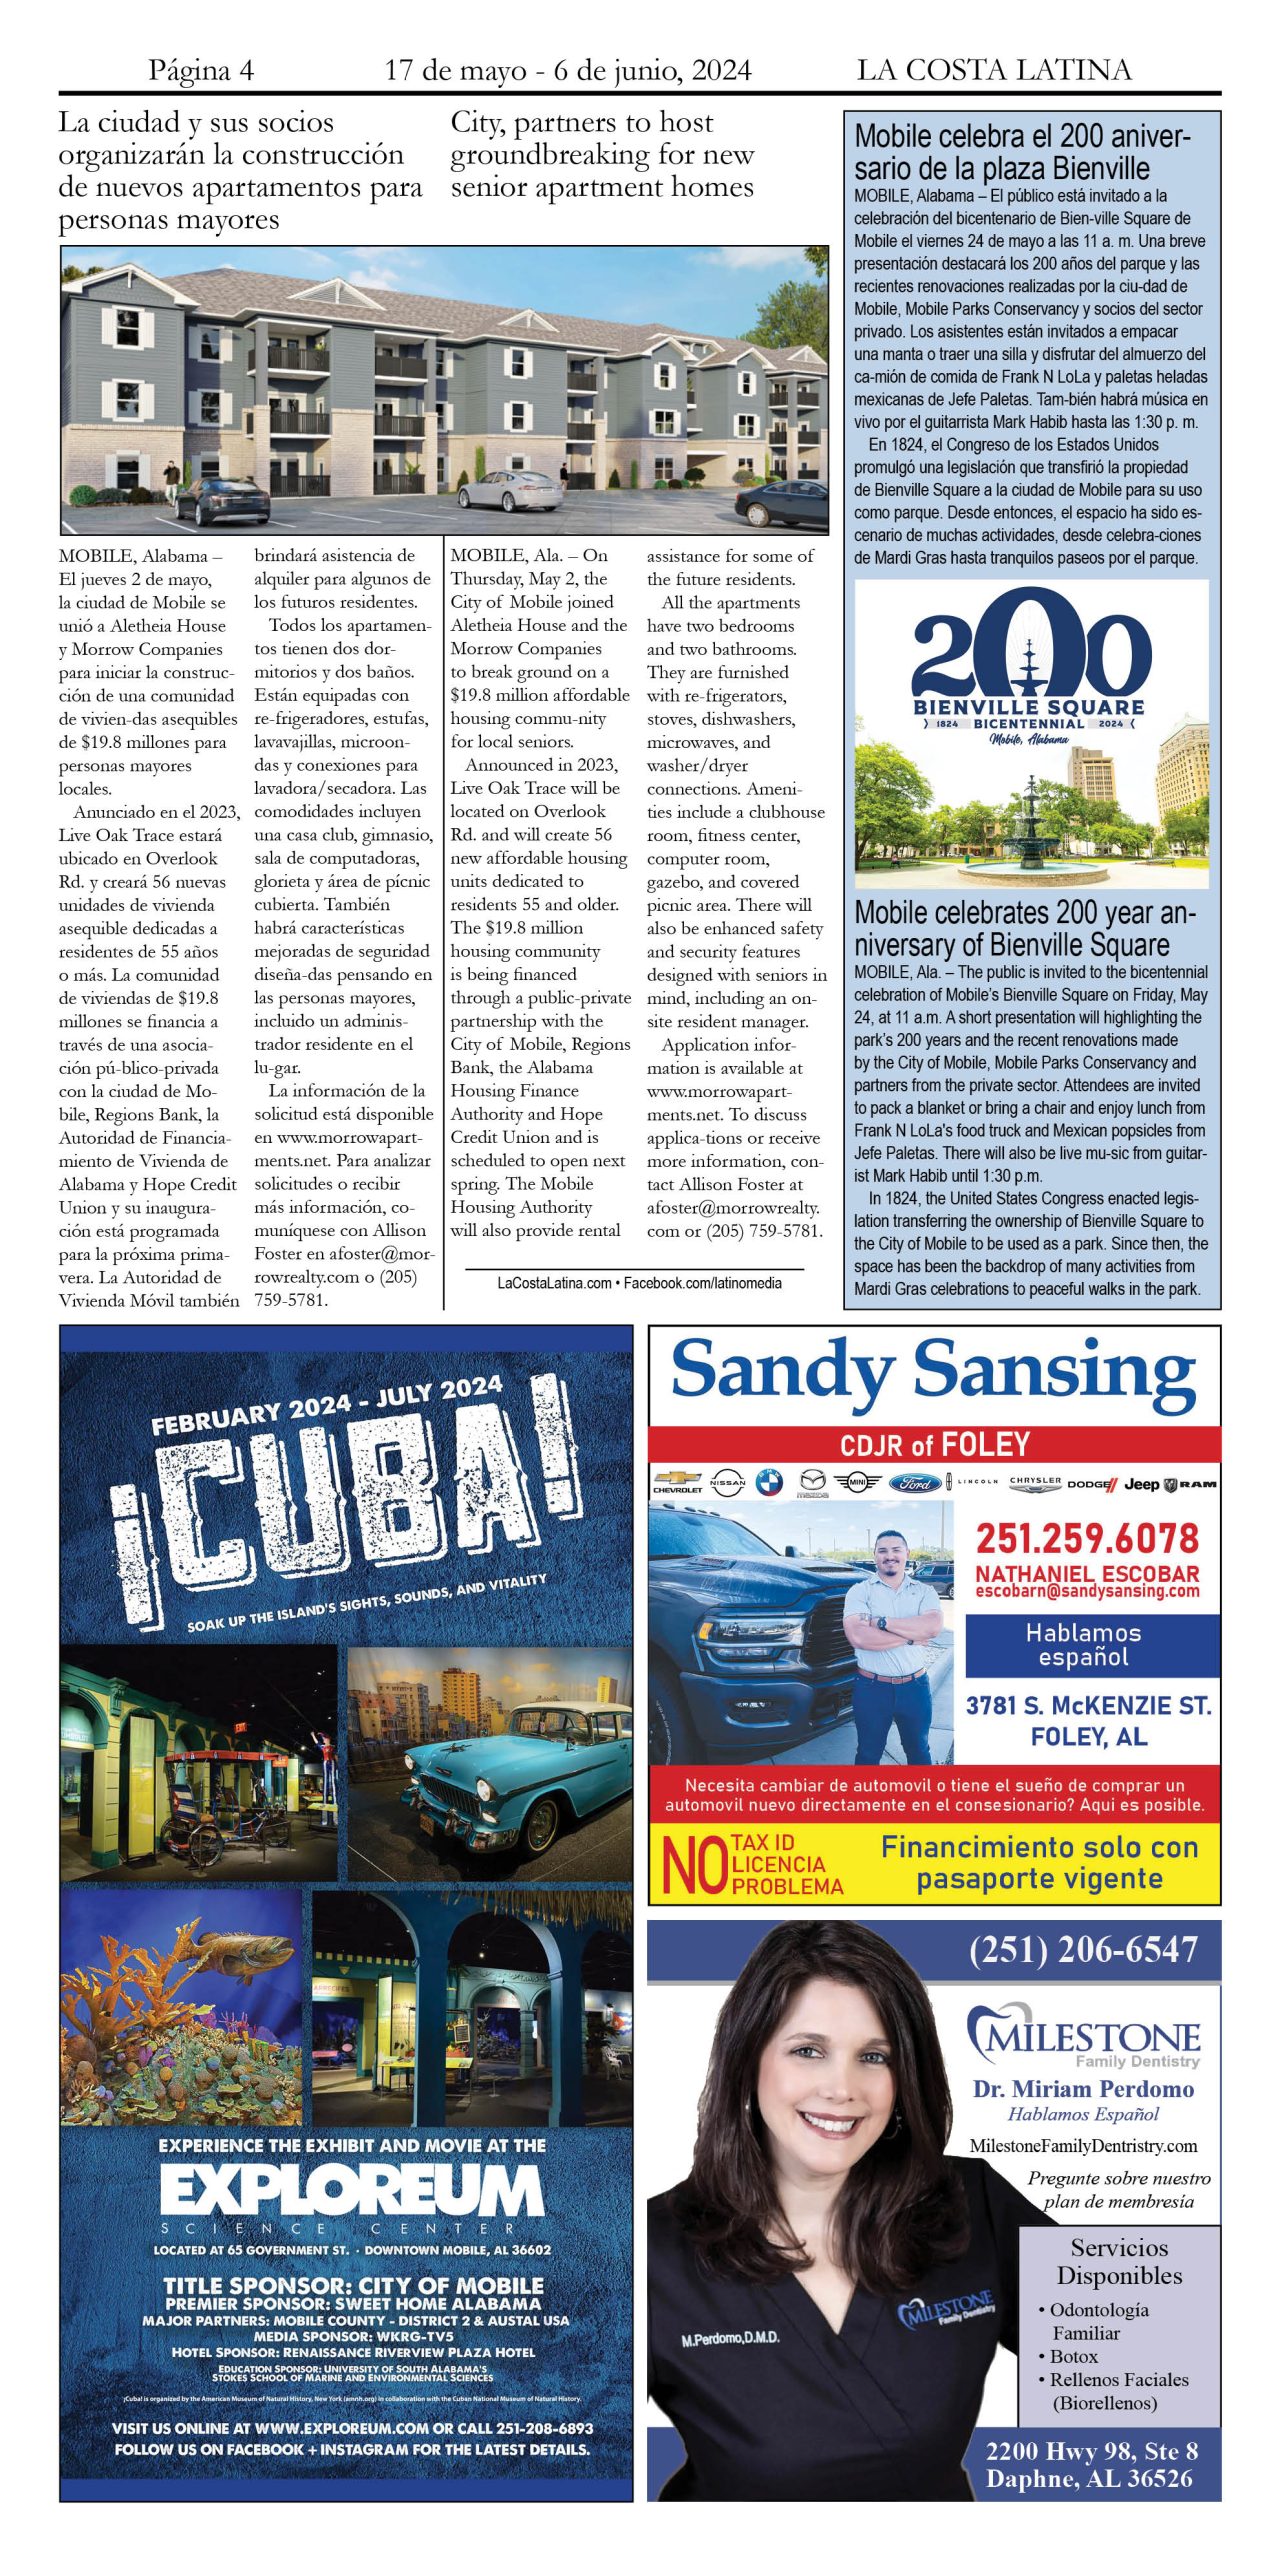 La Costa Latina May 17 - June 7, 2024 page 4